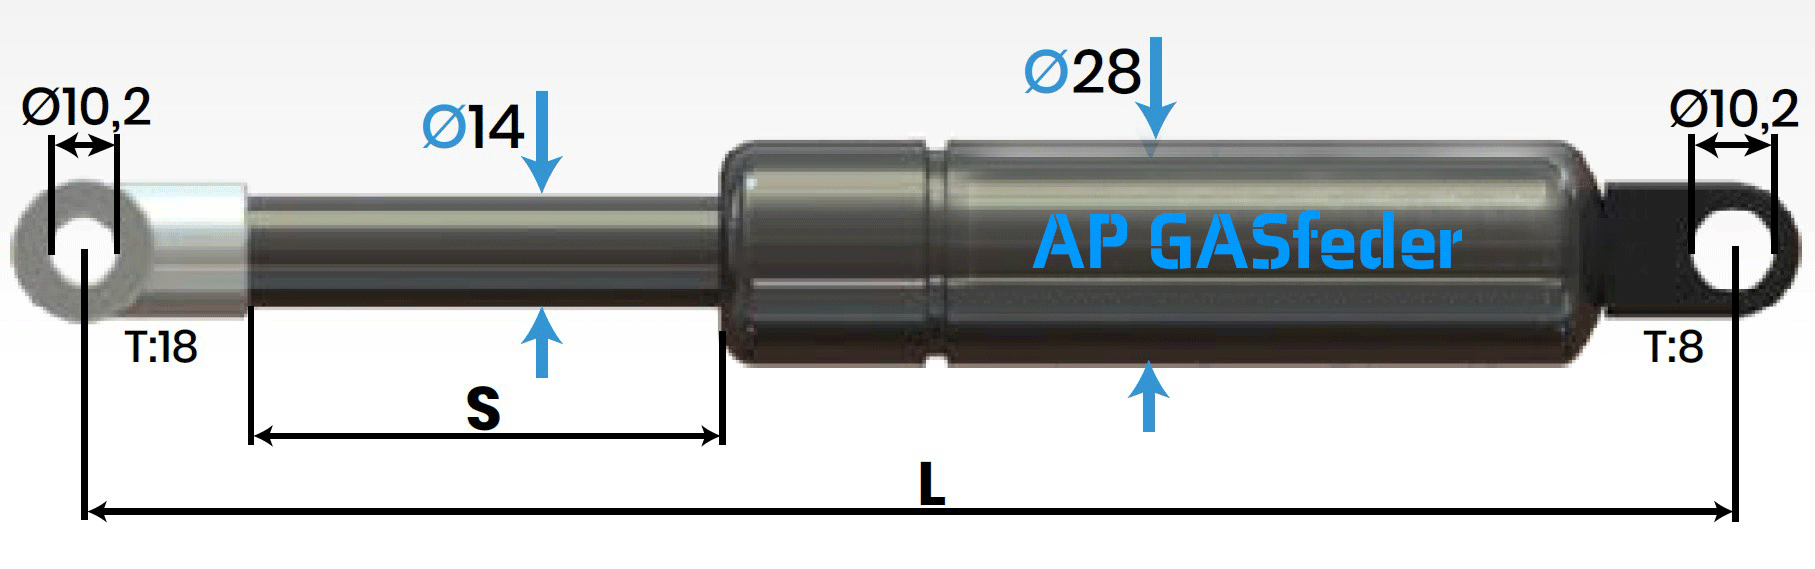 Immagine di AP GASfeder 1300N, 14/28, Hub(S): 100 mm, Länge (L): 302 mm,  Alternatvie SRST.1847LW